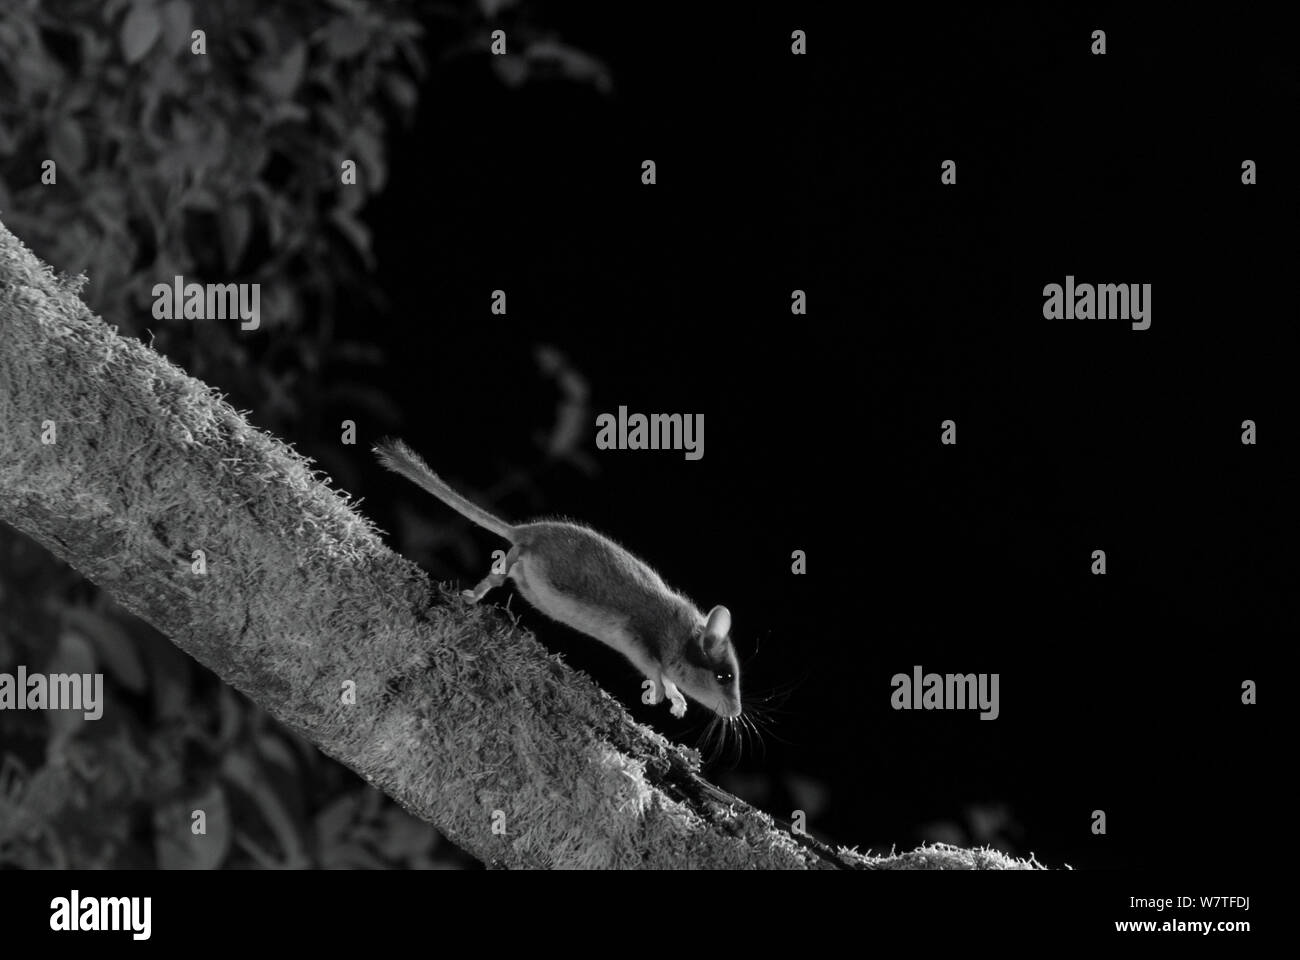 Siebenschläfer (Eliomys quercinus) bei Nacht mit Infra-red Remote Camera trap, Frankreich, Juli genommen. Stockfoto